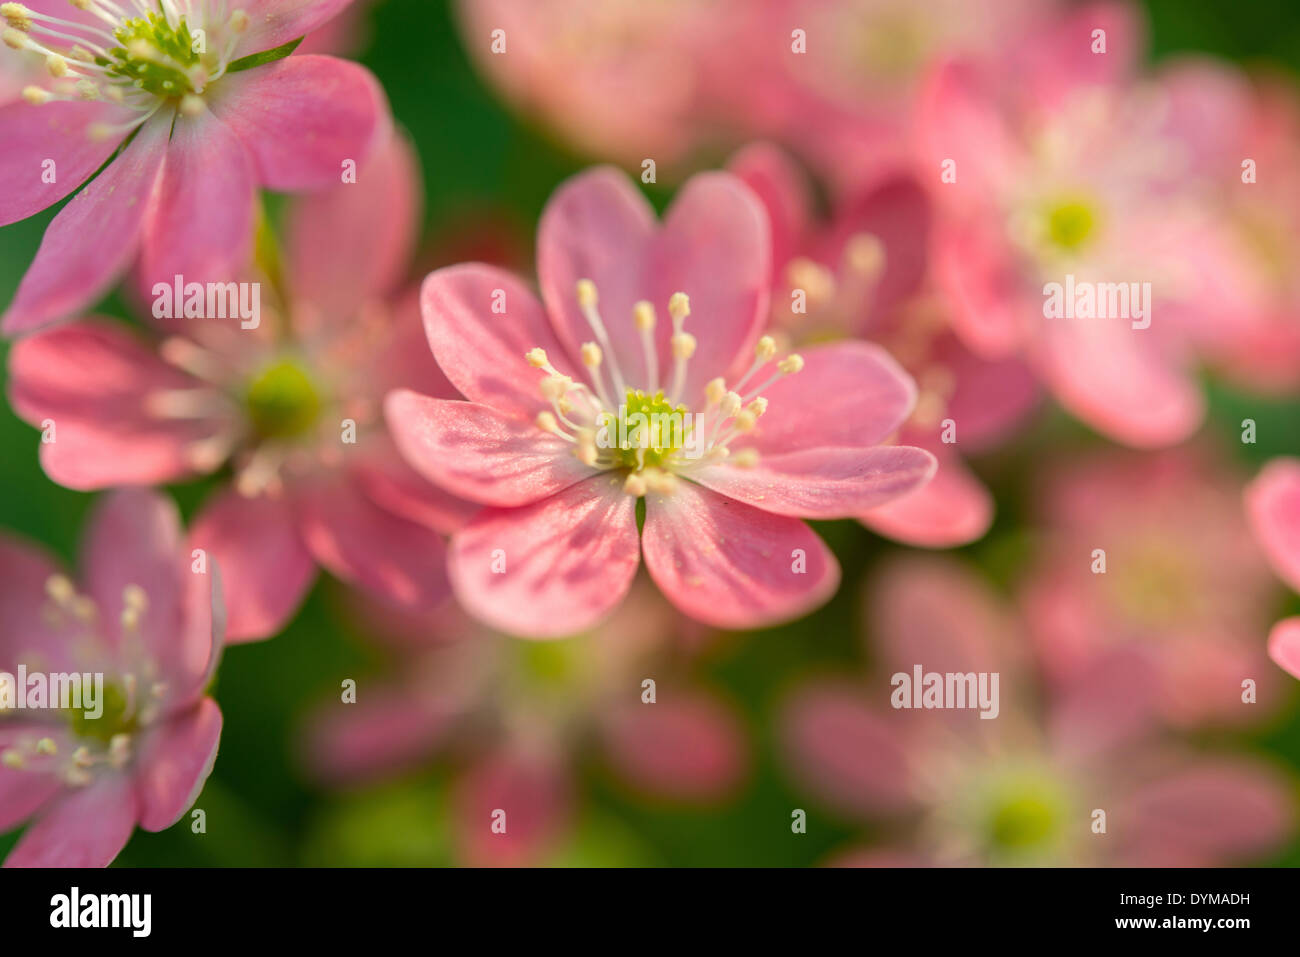 Pink Hepatica or Liverwort (Hepatica), cultivar, close-up Stock Photo